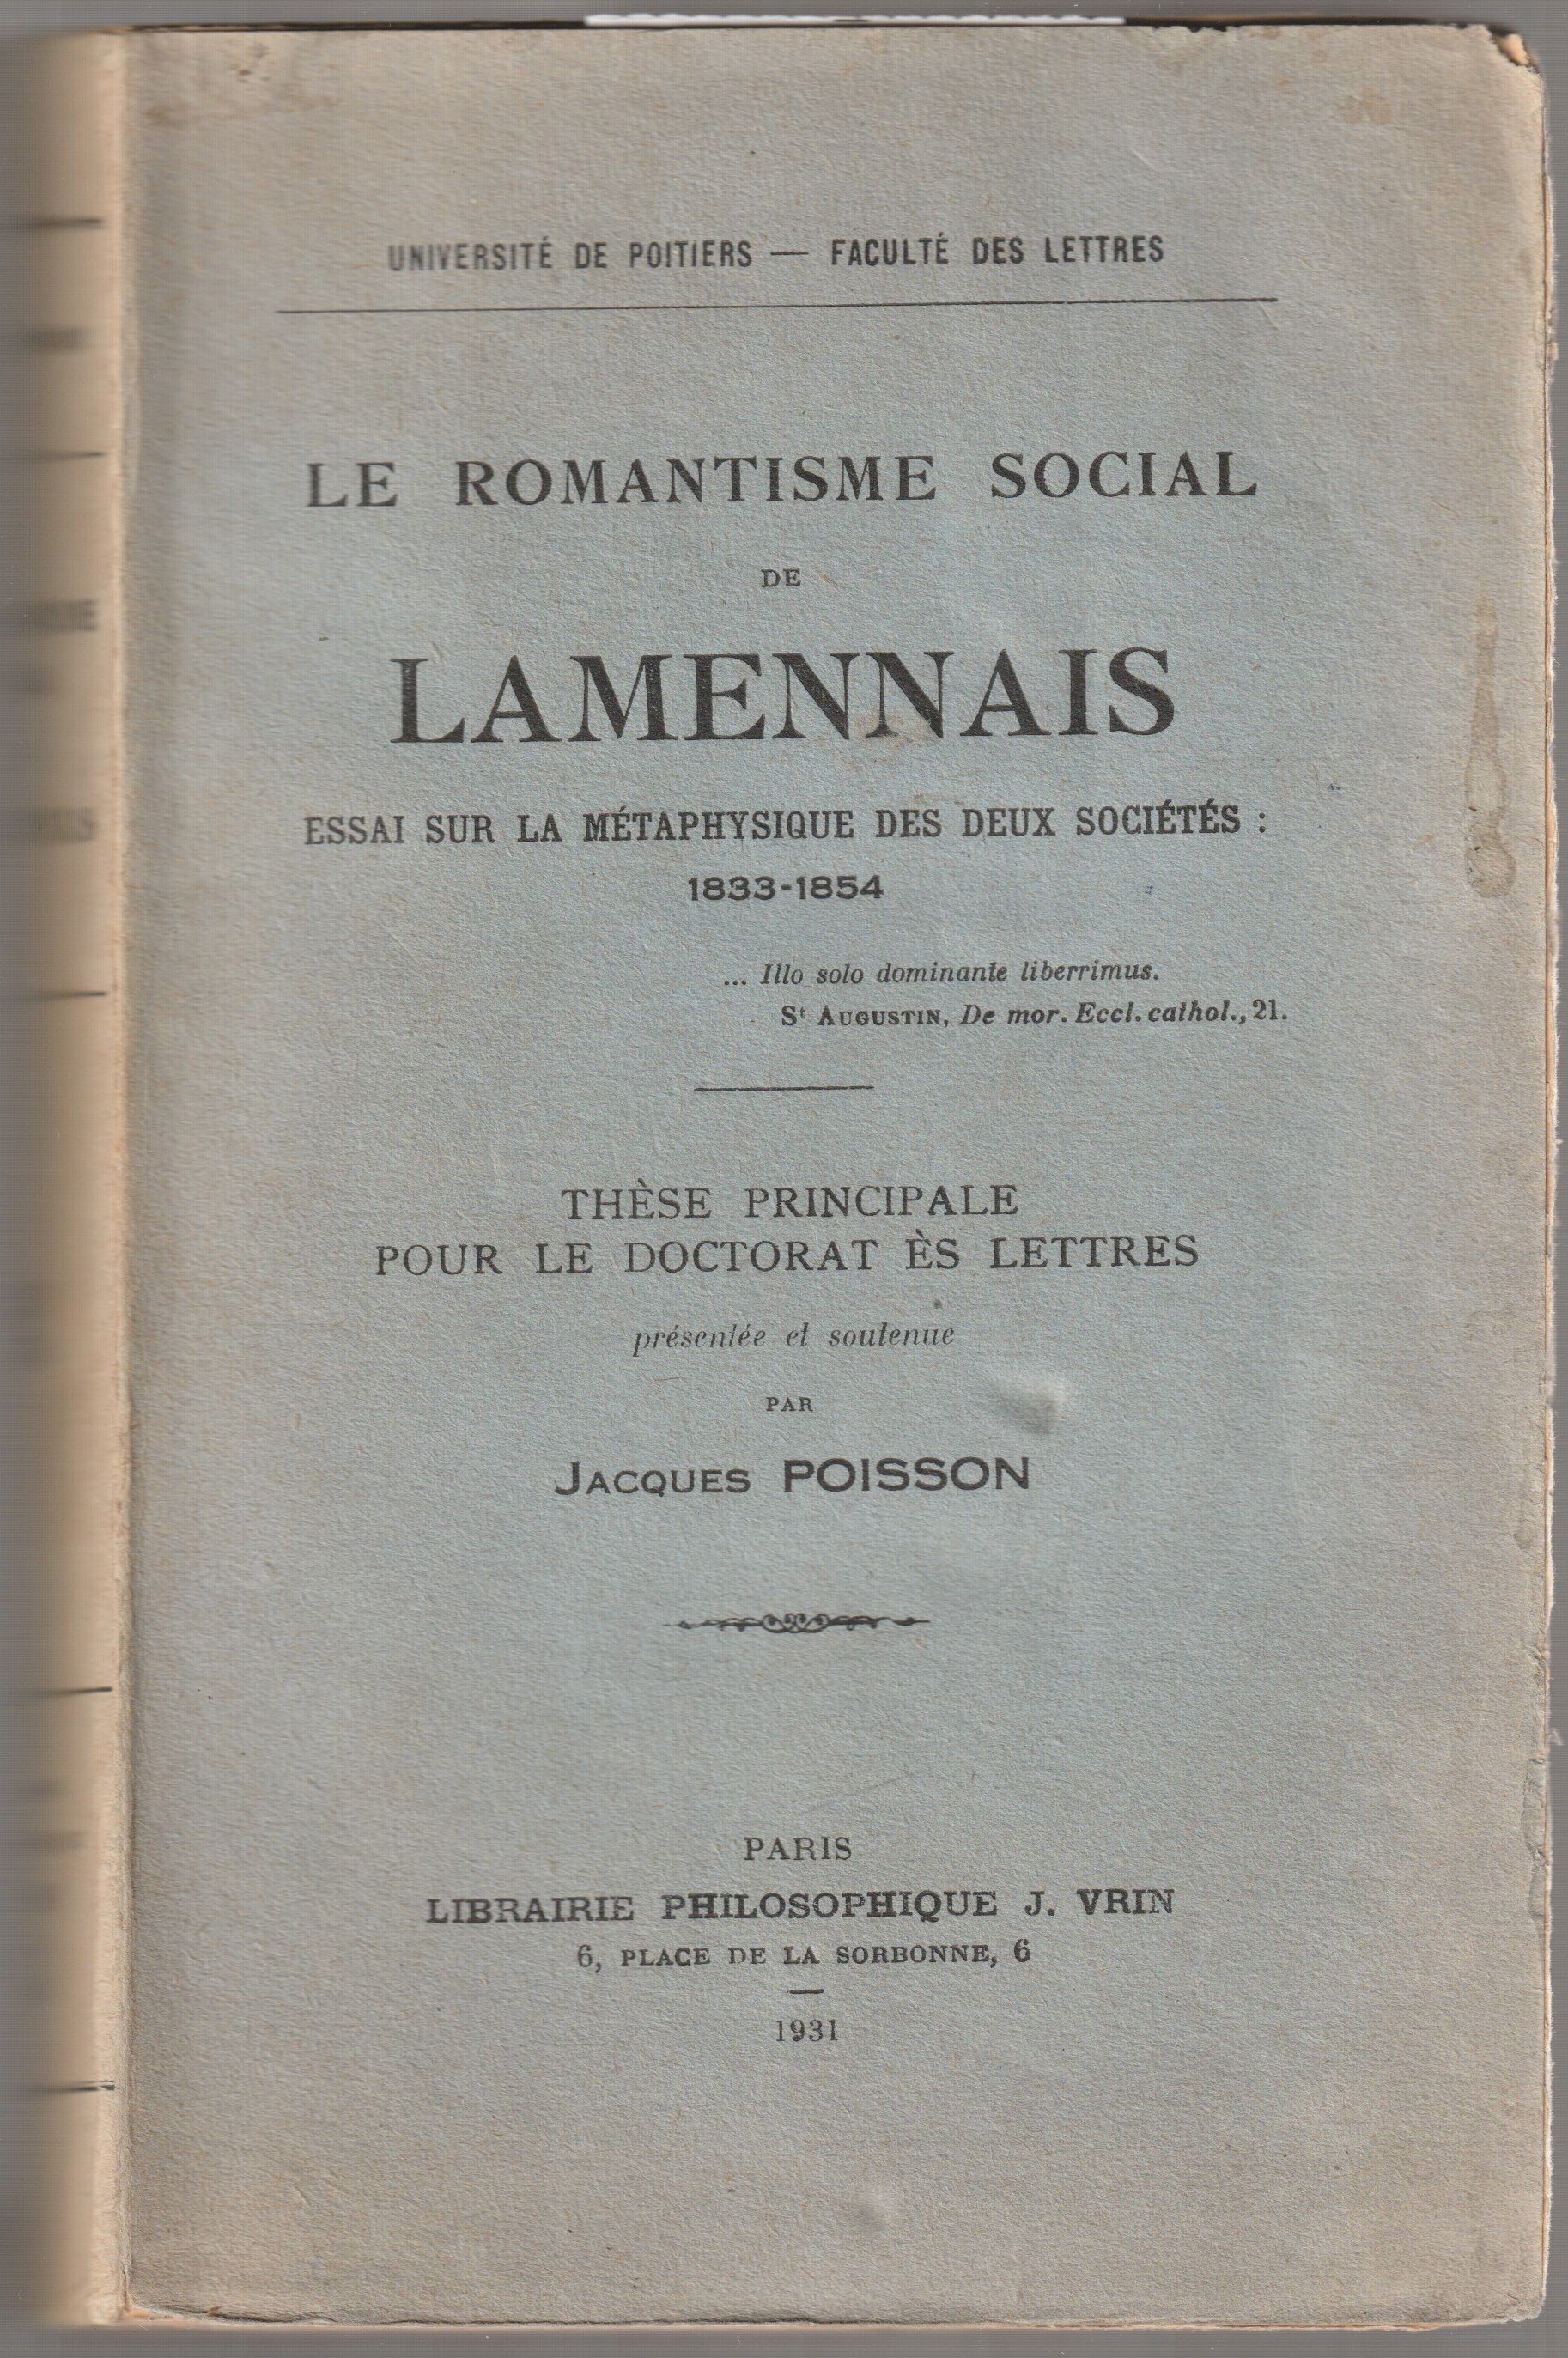 Le romantisme social de Lamennais : essai sur le metaphysique des deux societes, 1833-1854